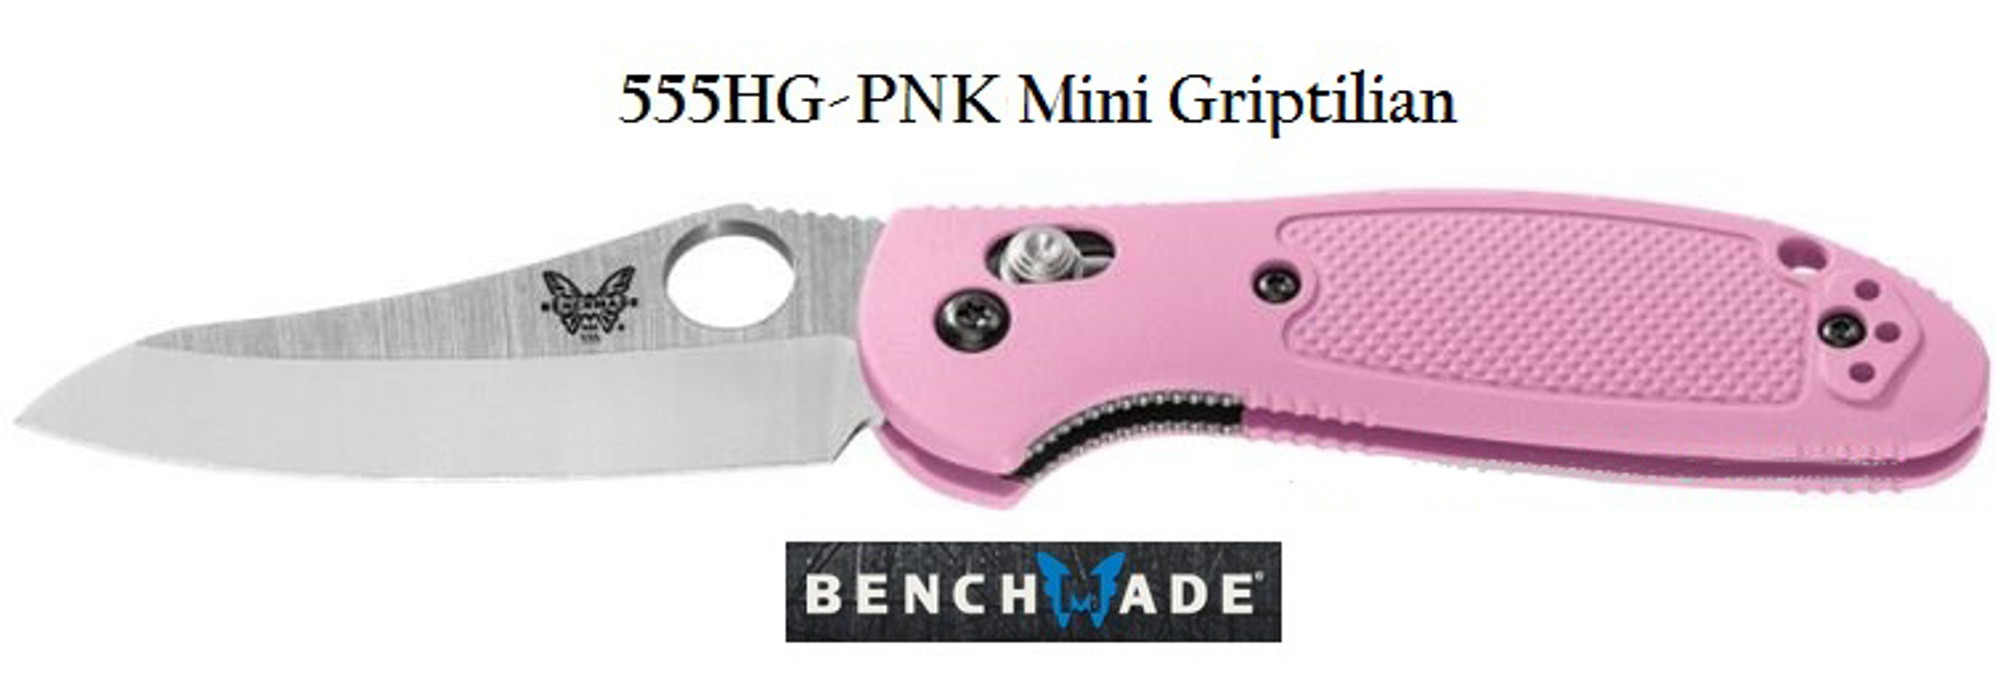 Benchmade 555HGPNK Griptilian Mini Plain Edge Pink